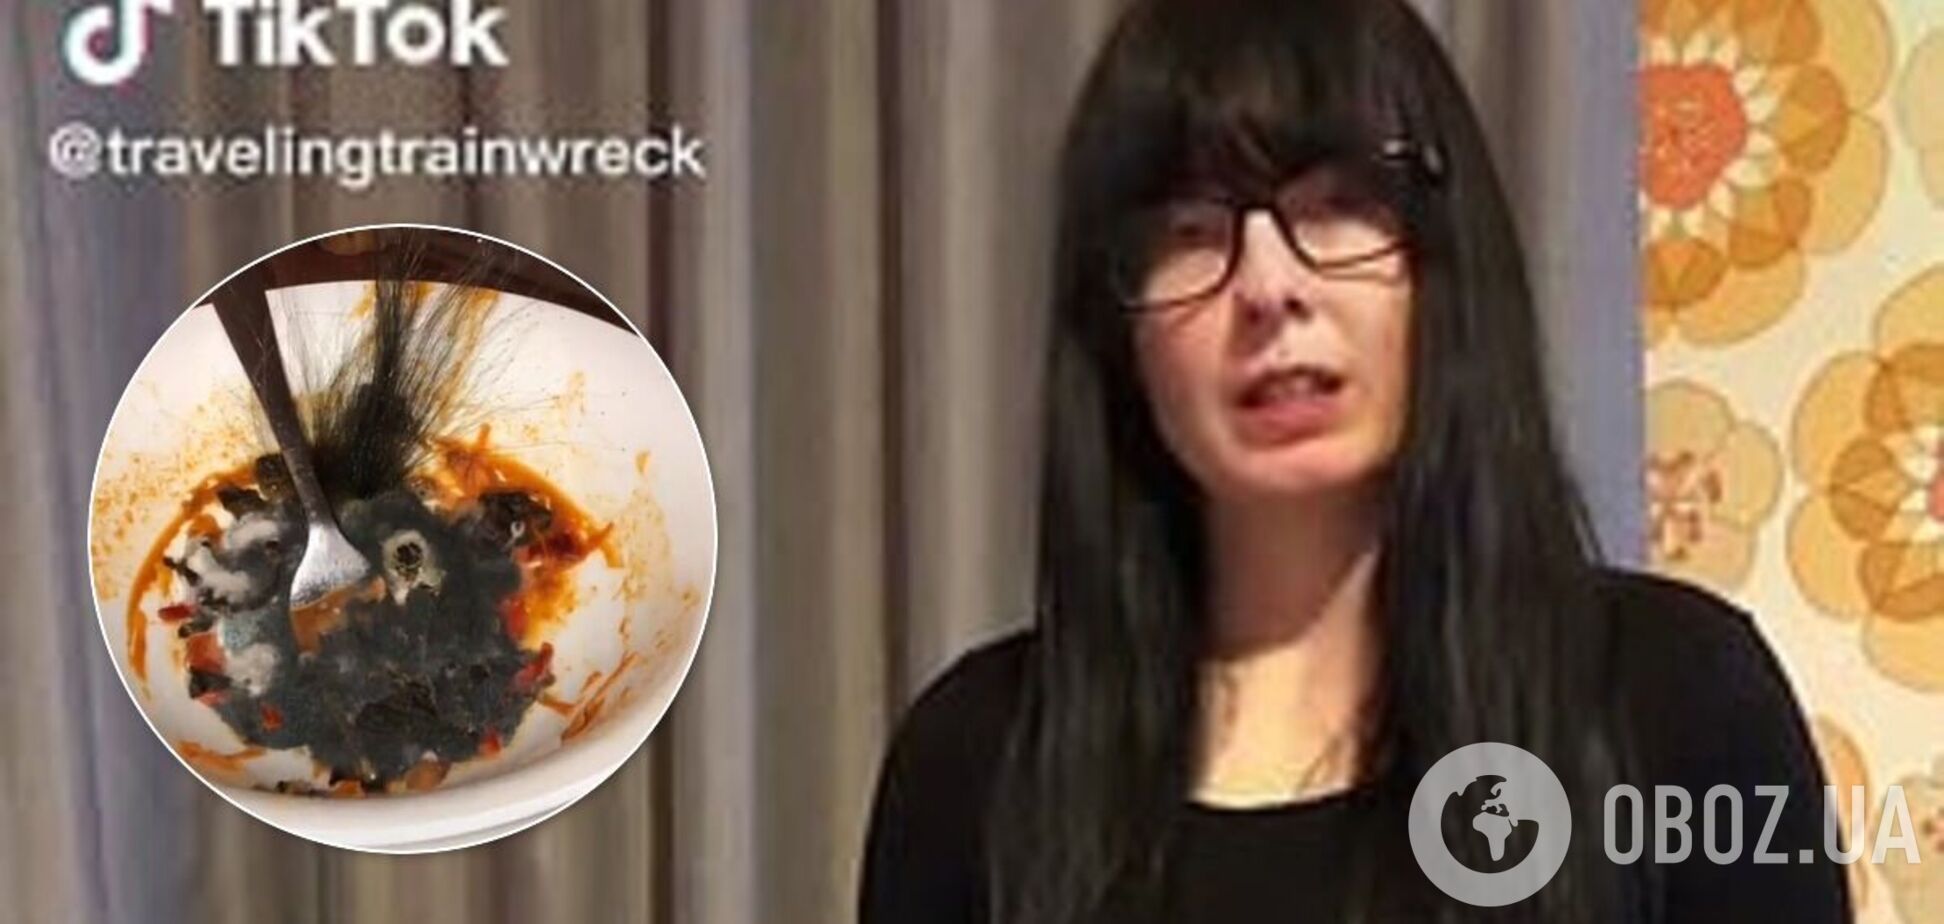 Жінка викликала огиду в мережі одним фото тарілки з пастою: в ній виросло 'волосся'